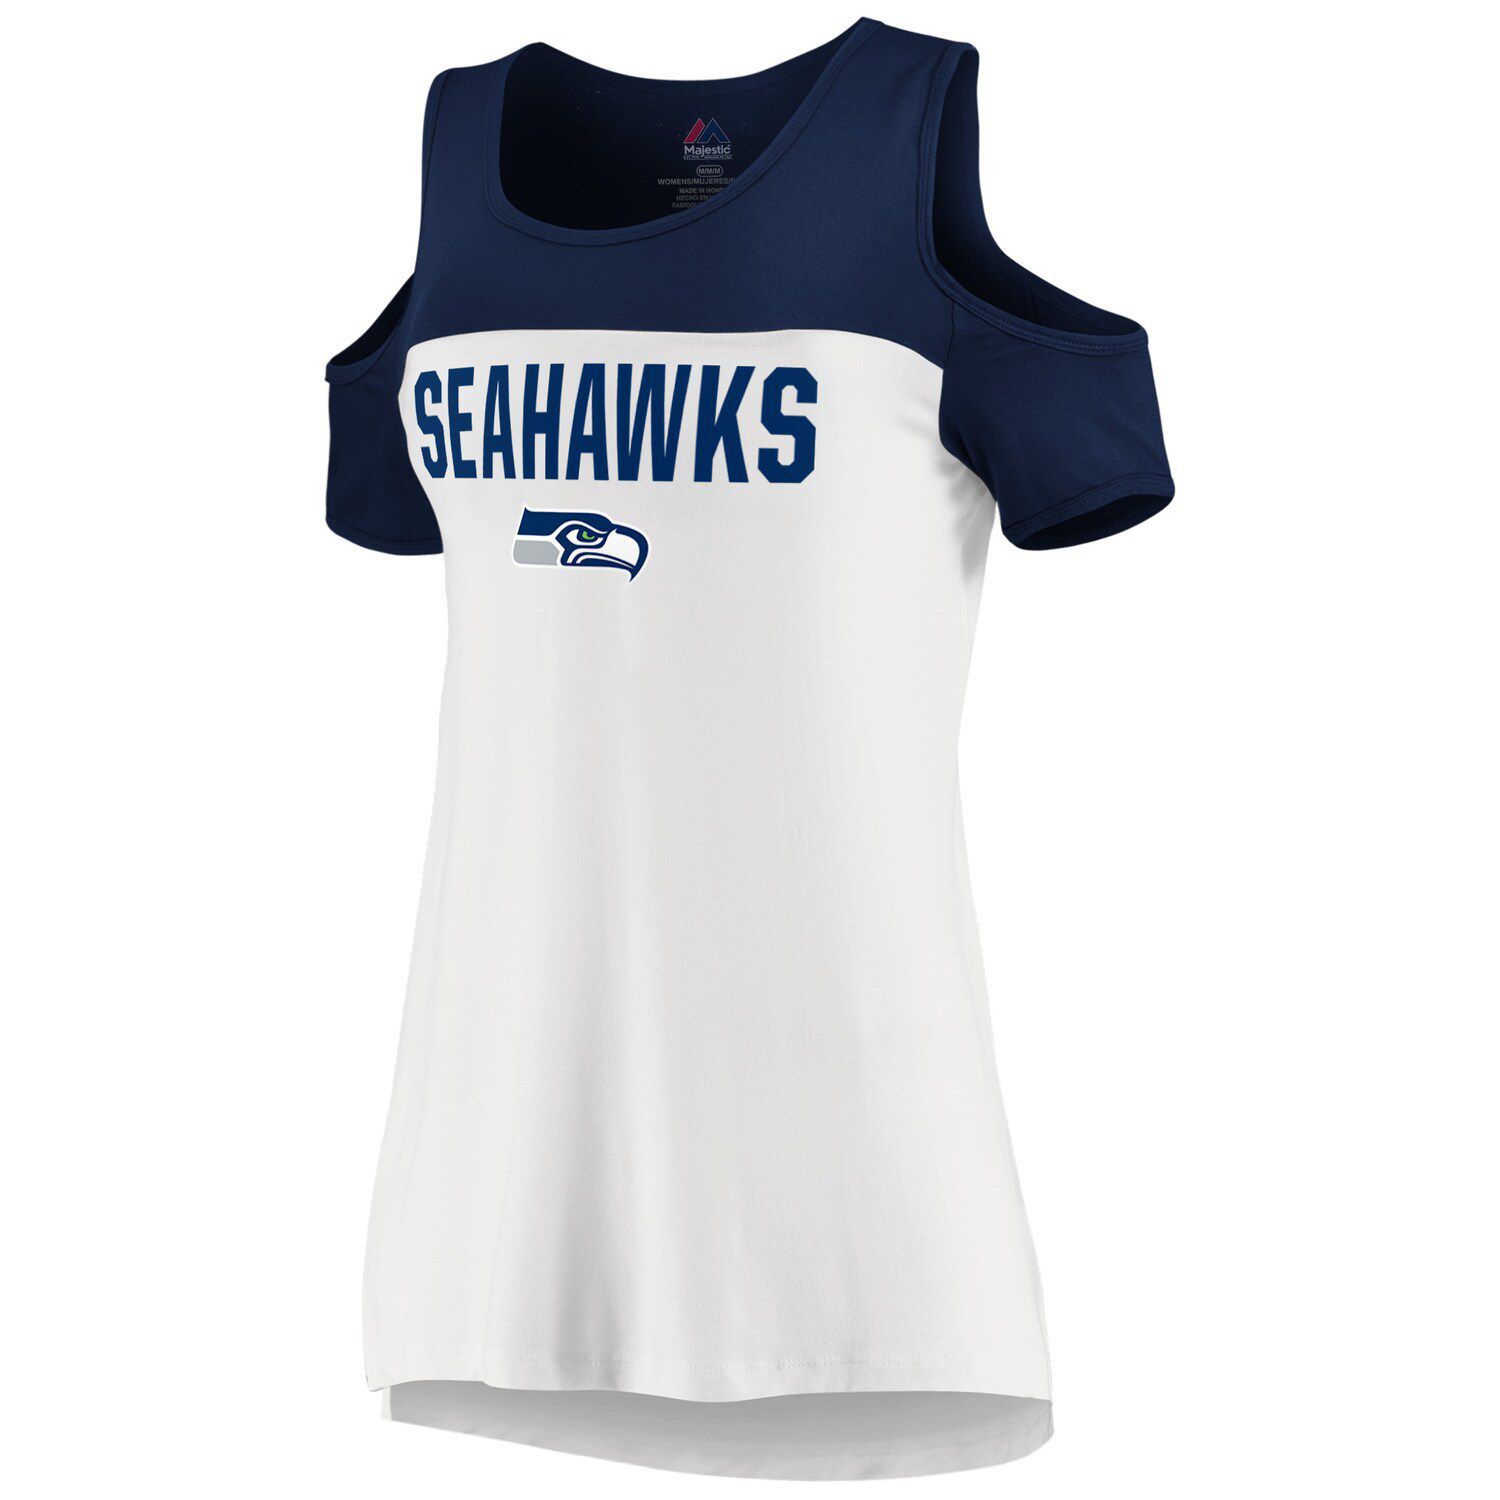 women's plus size seahawks jersey